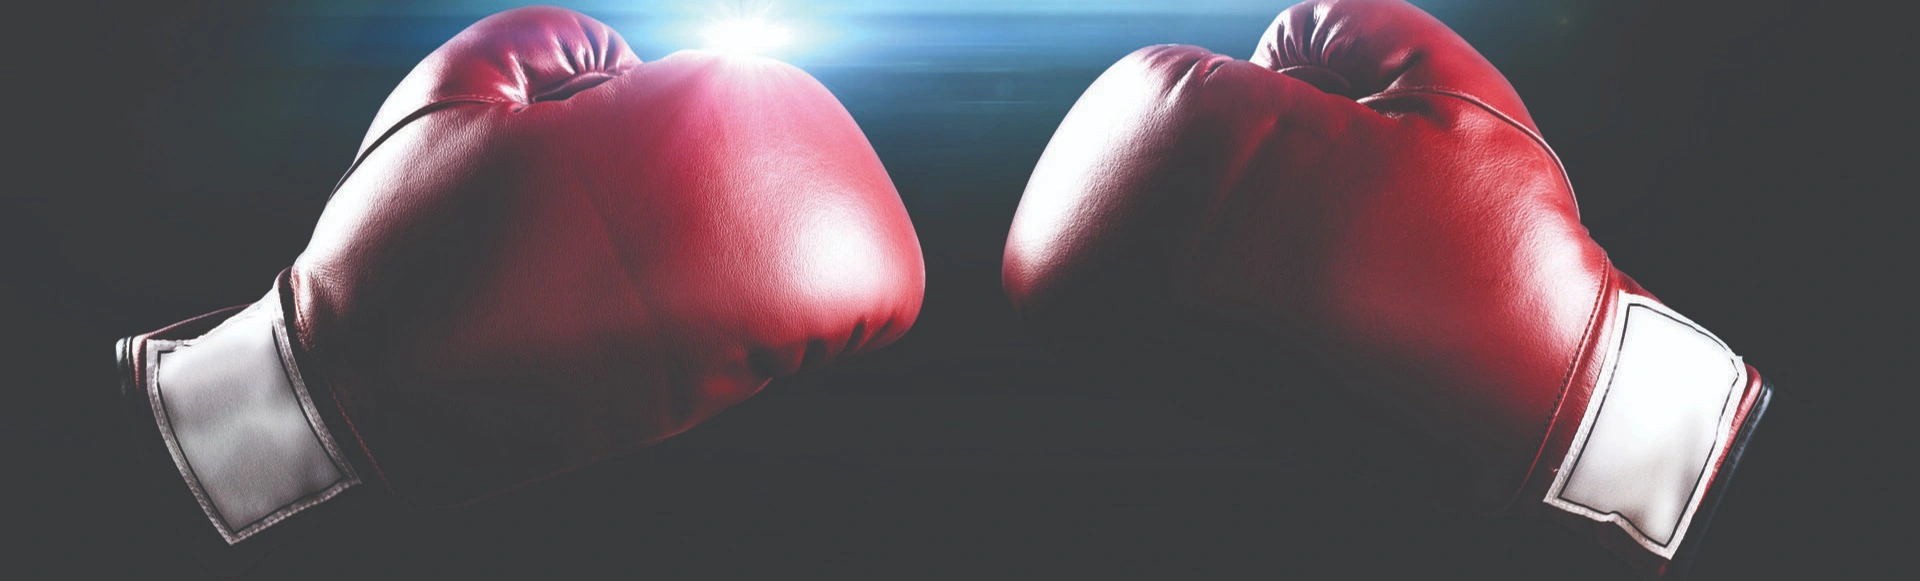 Hardcore Boxing. Jared Miller vs. Lucas Browne